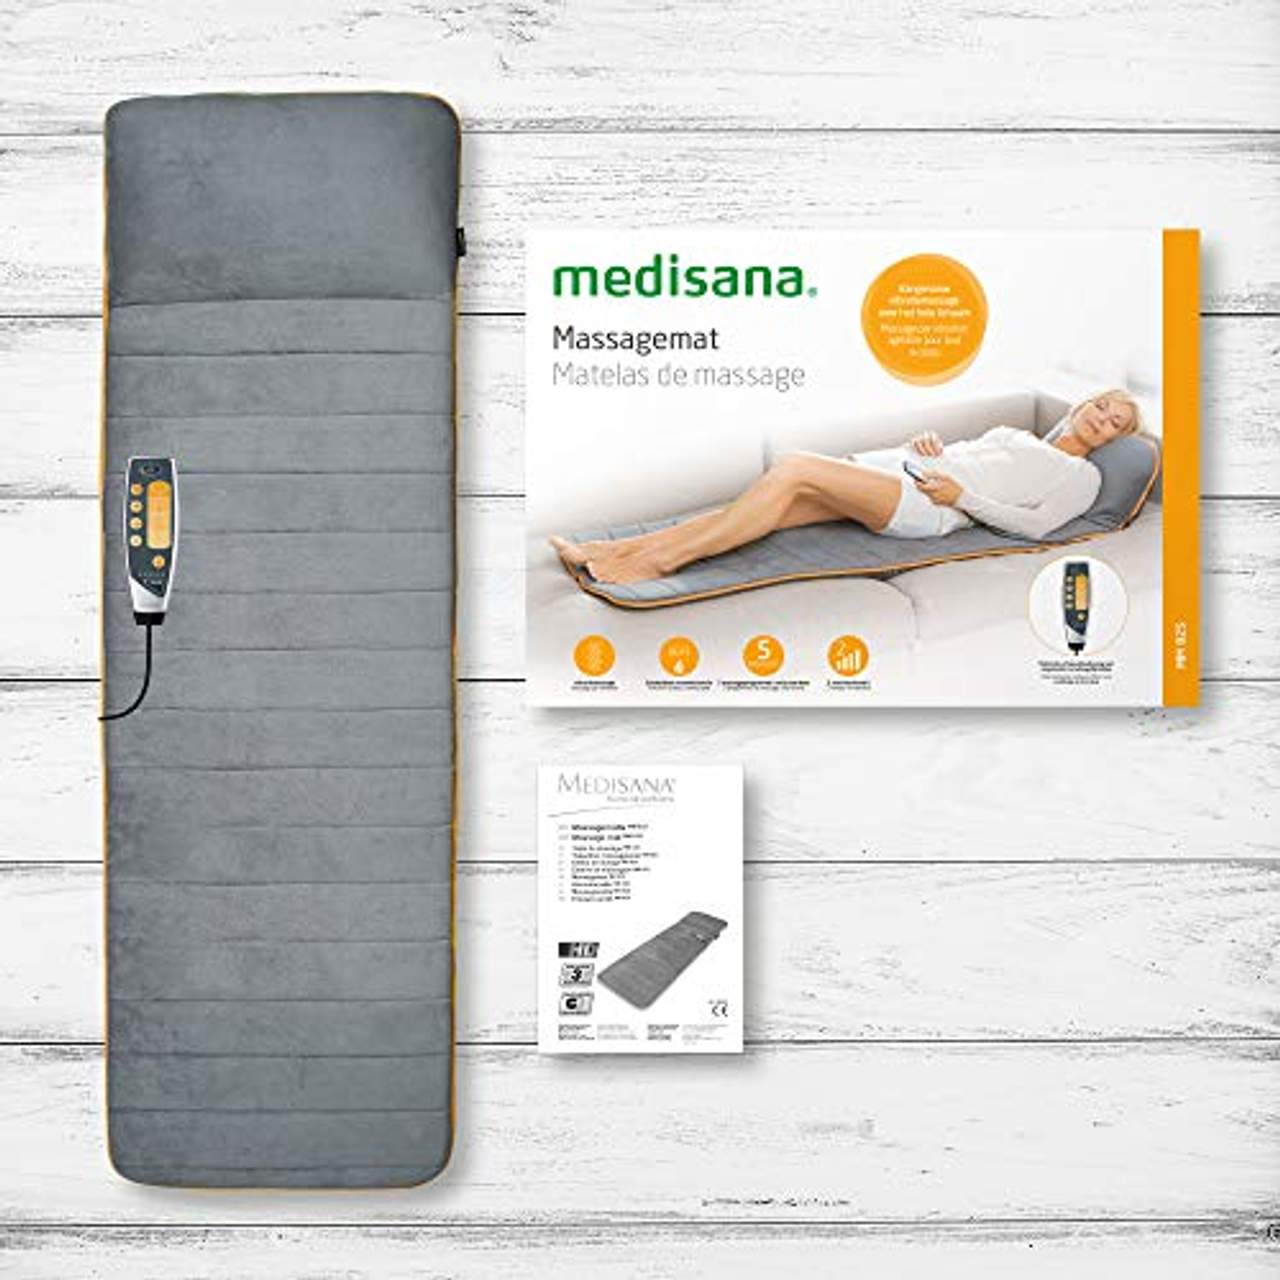 Medisana MM 825 Massagematte elektrisch